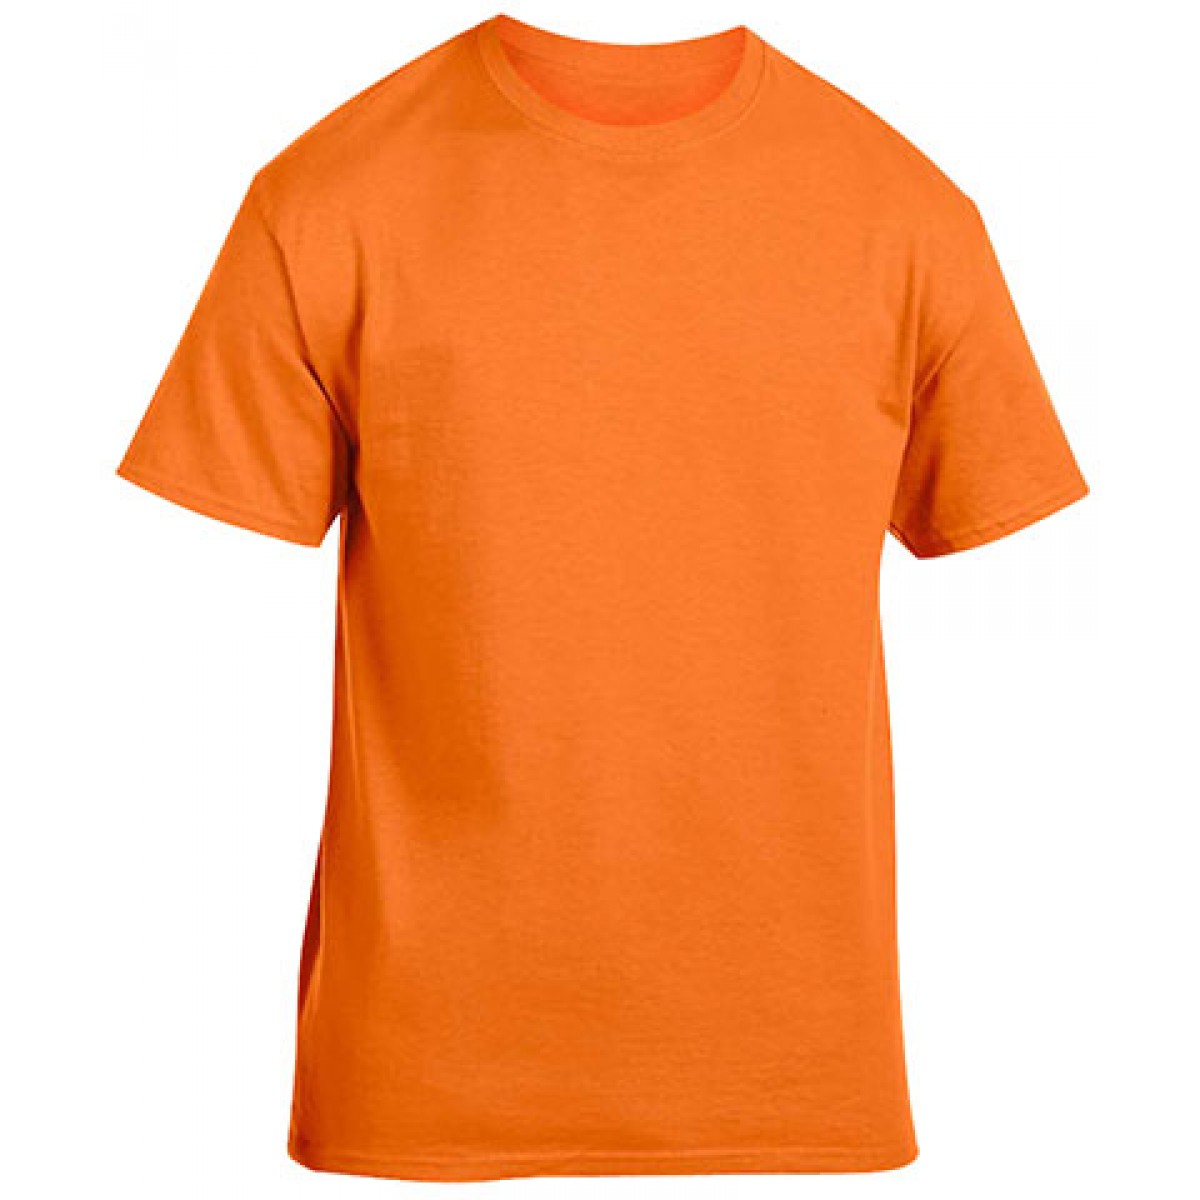 Heavy Cotton Activewear T-Shirt-Safety Orange-XL